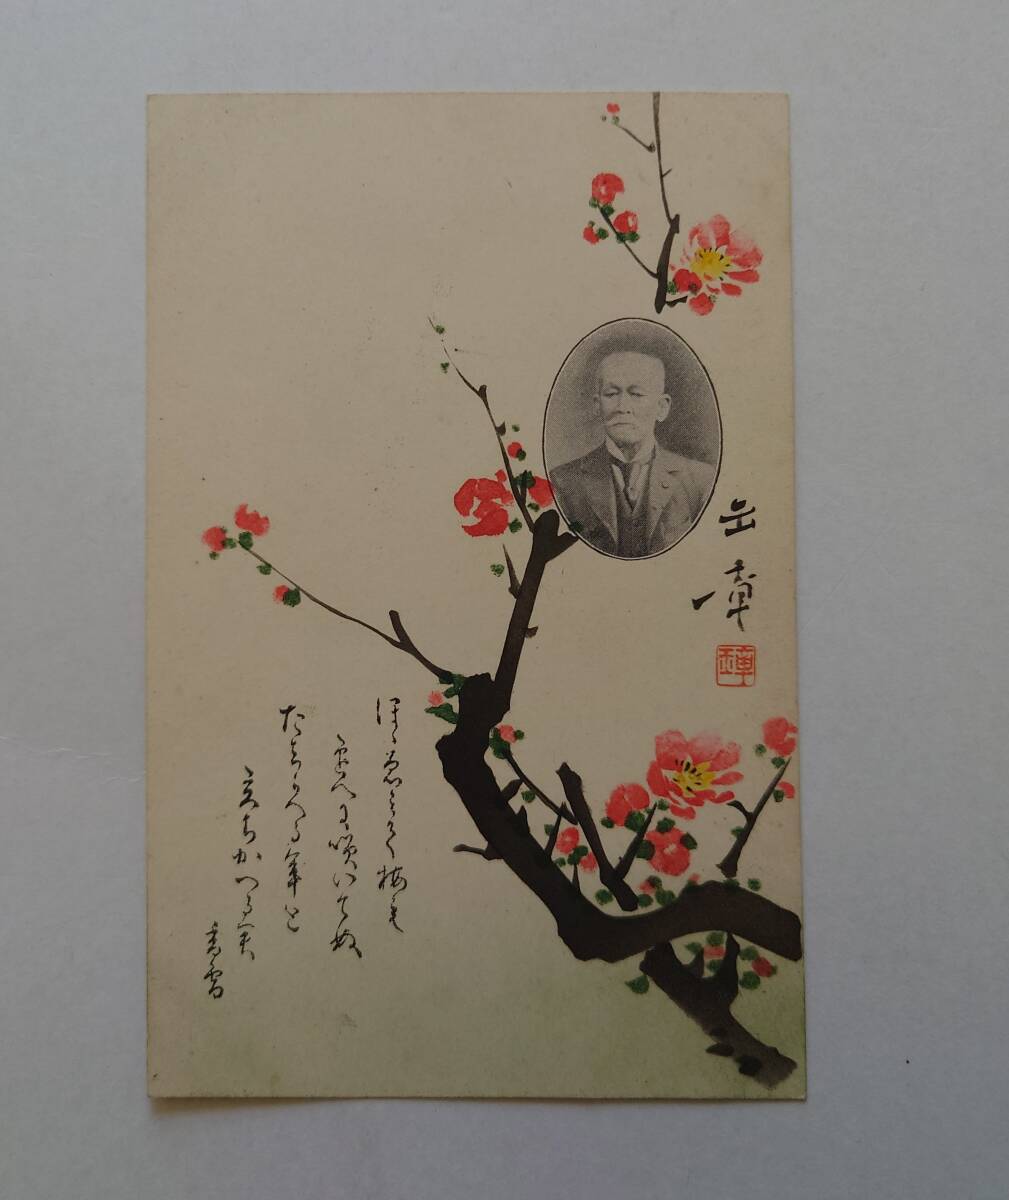 HL190. Kawabata Gyokusho Edición privada Tarjeta de Año Nuevo/Arte/Postal/Epostcard, antiguo, recopilación, bienes varios, tarjeta postal